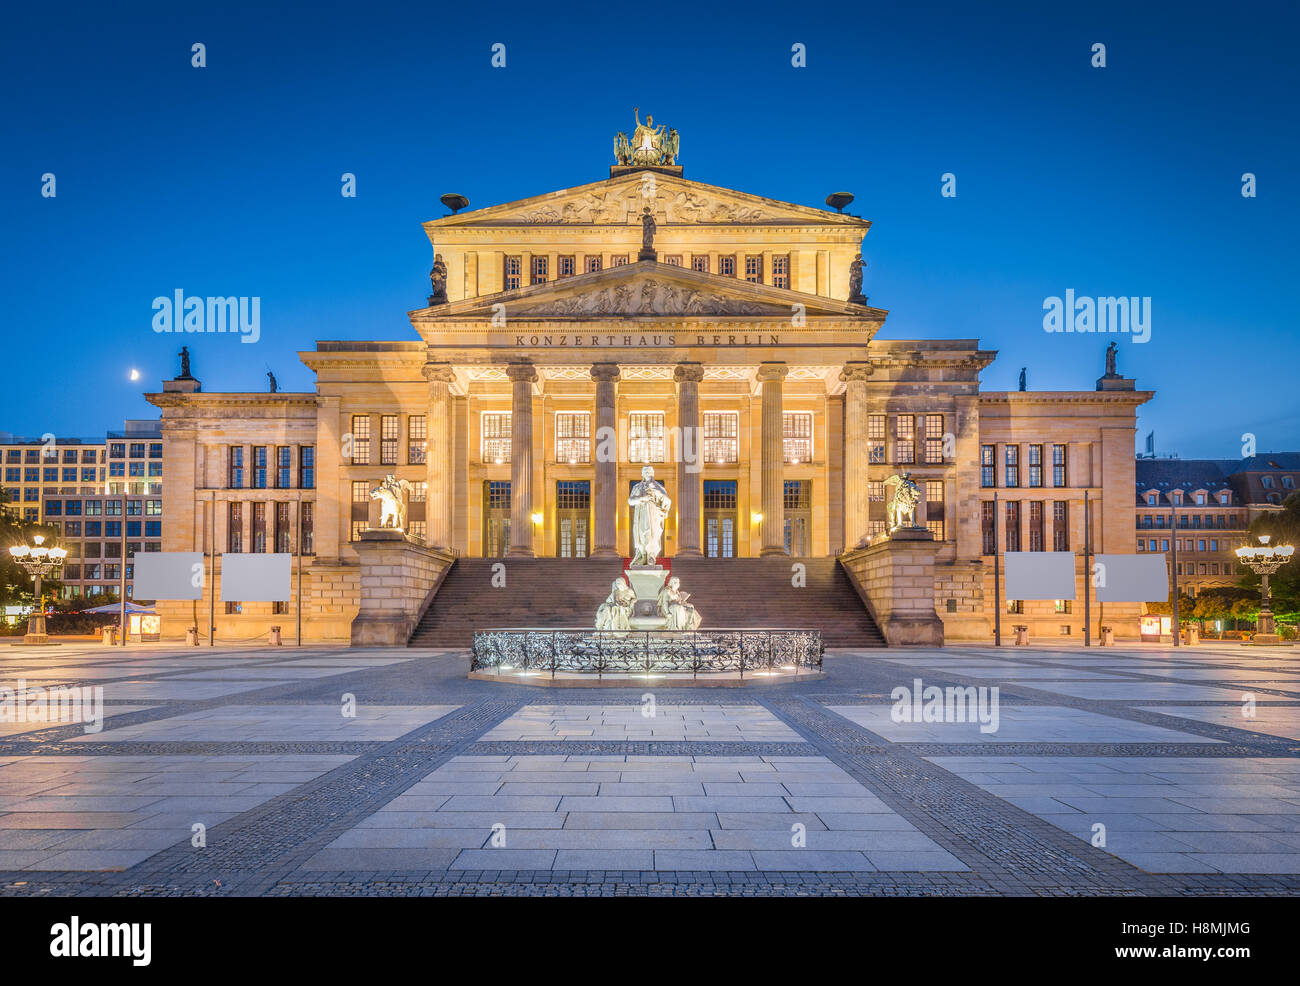 Visualizzazione classica di Berlino storica sala da concerto alla famosa piazza Gendarmenmarkt in bella crepuscolo al tramonto, Berlino, Germania Foto Stock